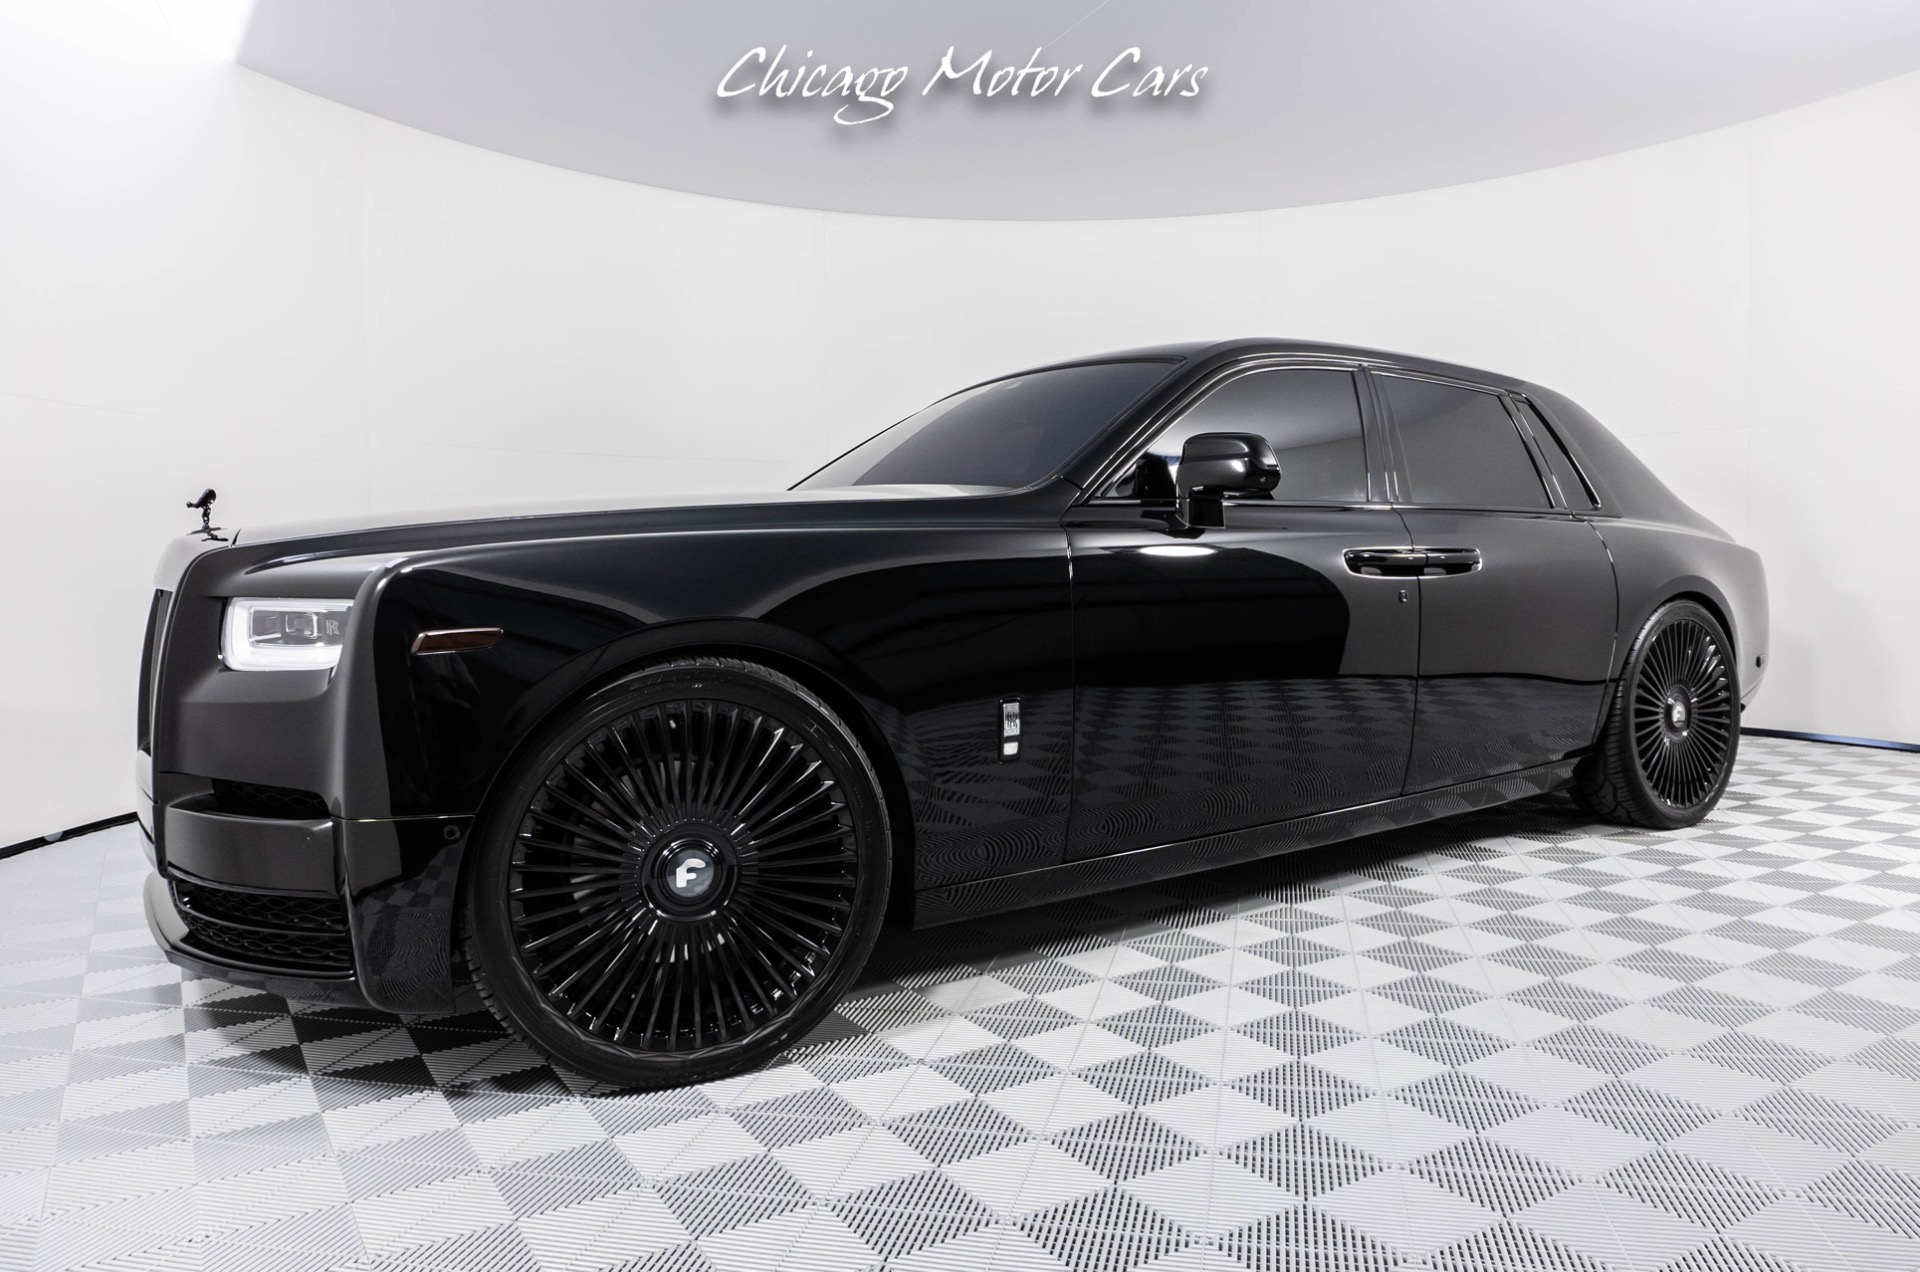 Chi tiết Rolls Royce Phantom kèm giá bán 092023